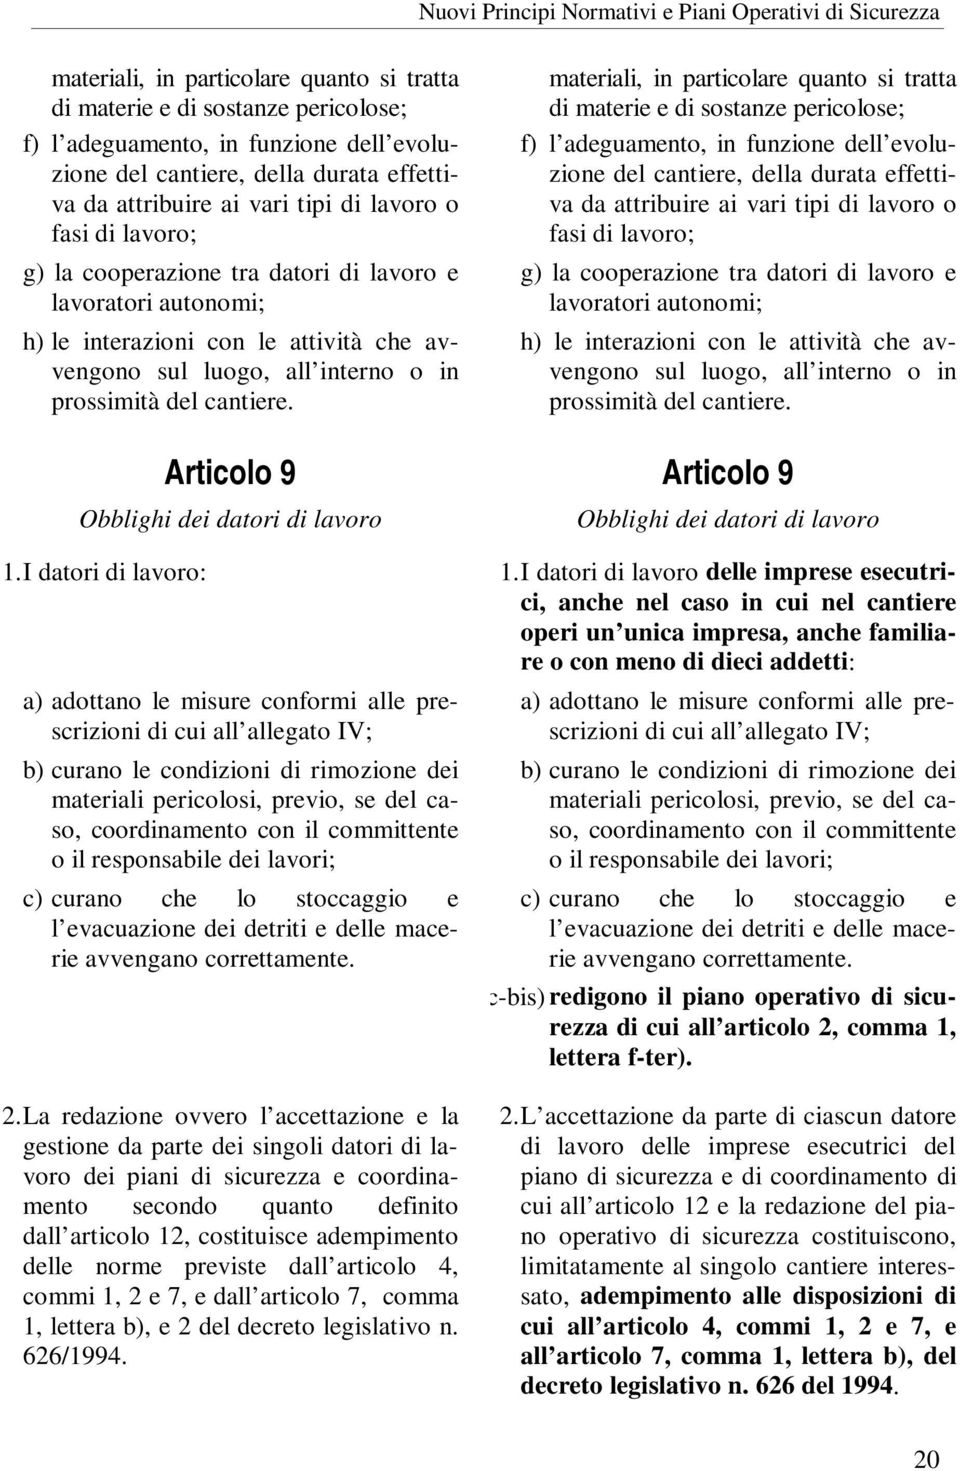 Articolo 9 Obblighi dei datori di lavoro   Articolo 9 Obblighi dei datori di lavoro 1.I datori di lavoro: 1.